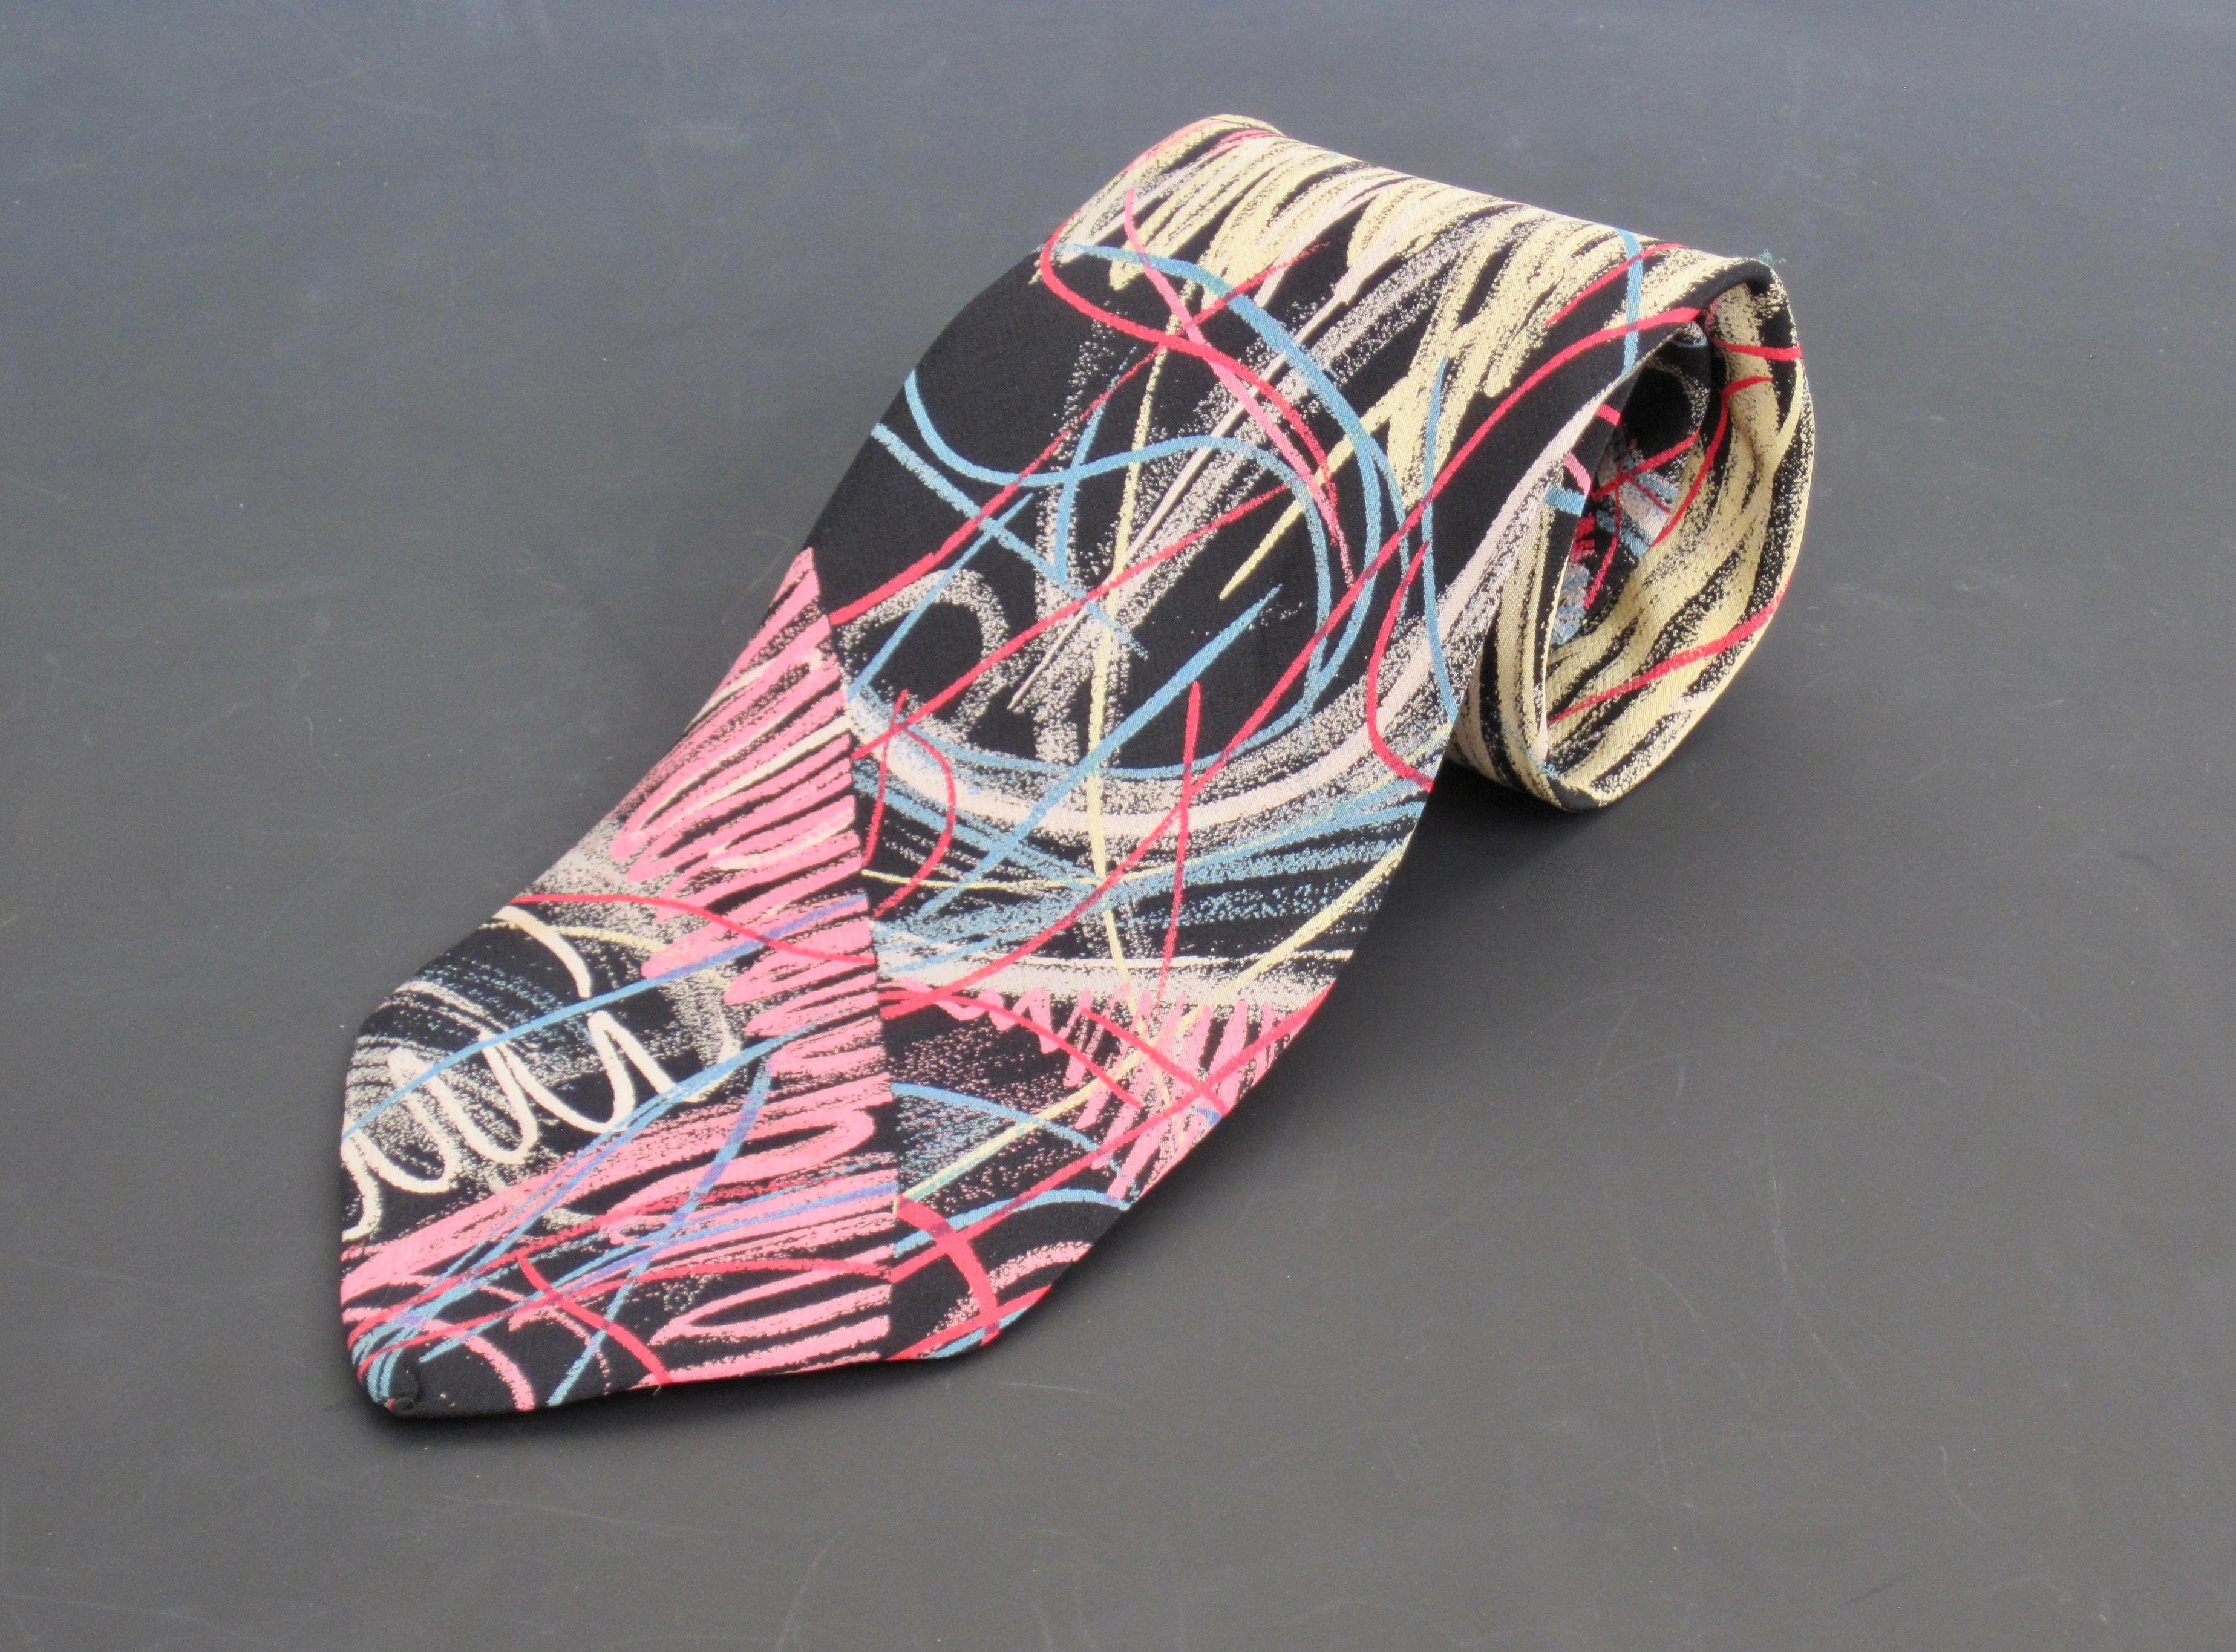 Cravate italienne en soie avec un dessin coloré de Massimo Iosa Ghini, circa 1985. Les lignes bleues et rouges superposées à des gribouillis jaunes, roses et gris et à un fond noir créent une ambiance amusante, énergique et artistique. 
Cet article